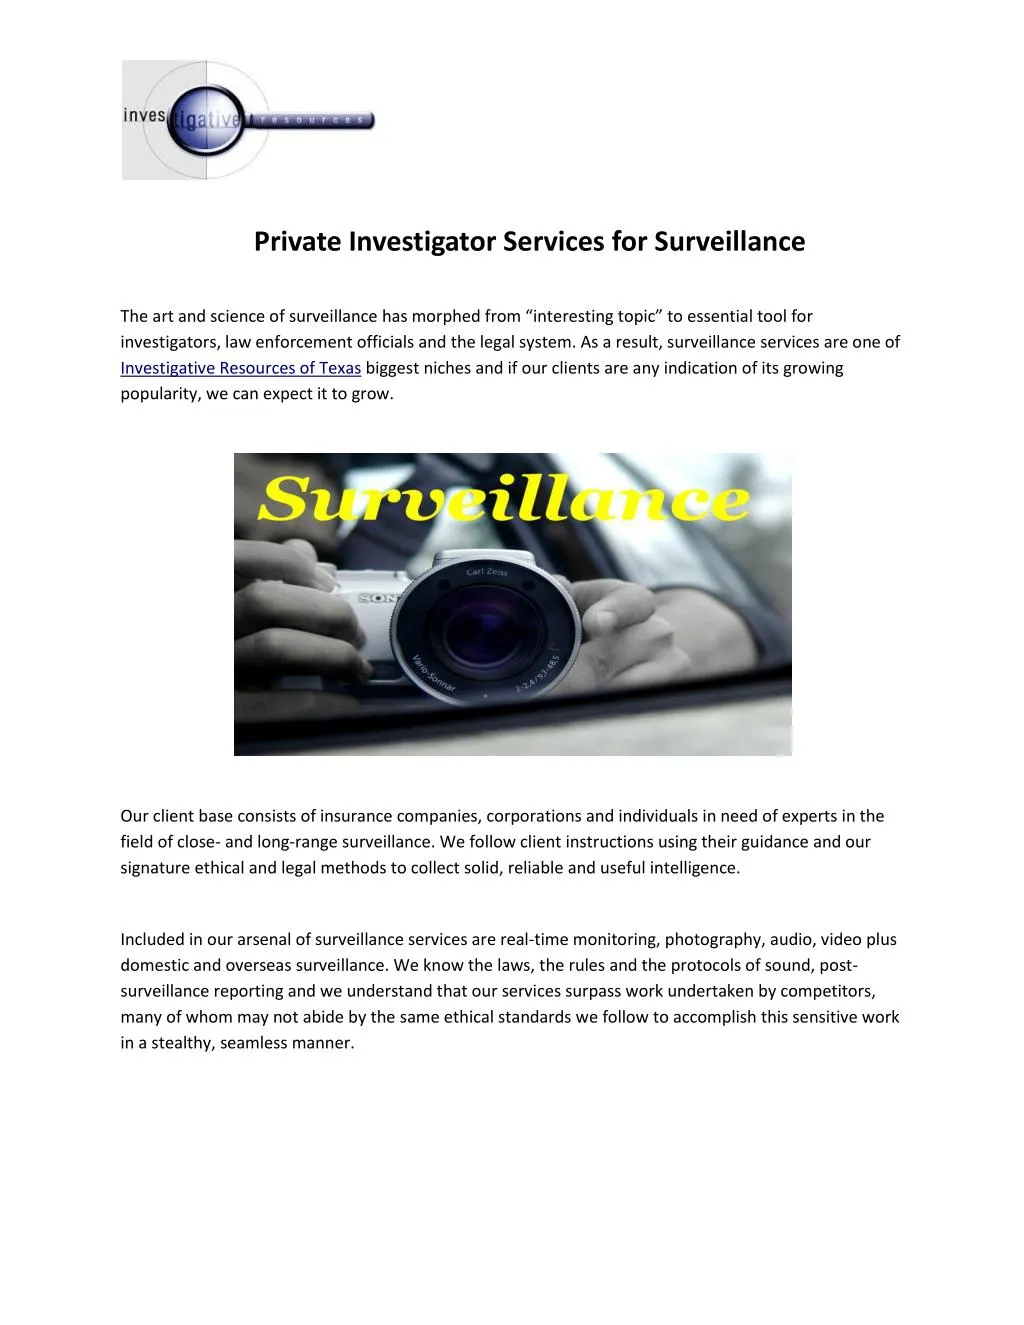 private investigator services for surveillance